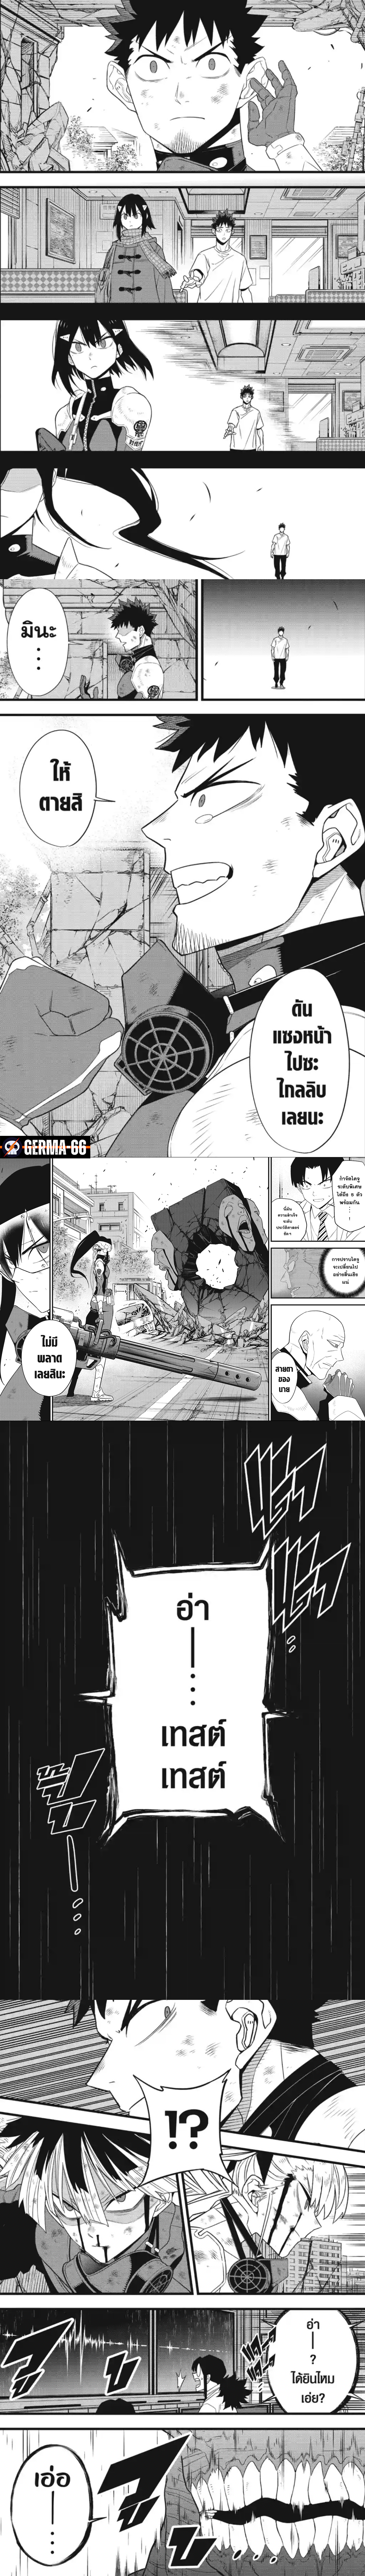 อ่านการ์ตูน Kaiju No. 8 96 ภาพที่ 2